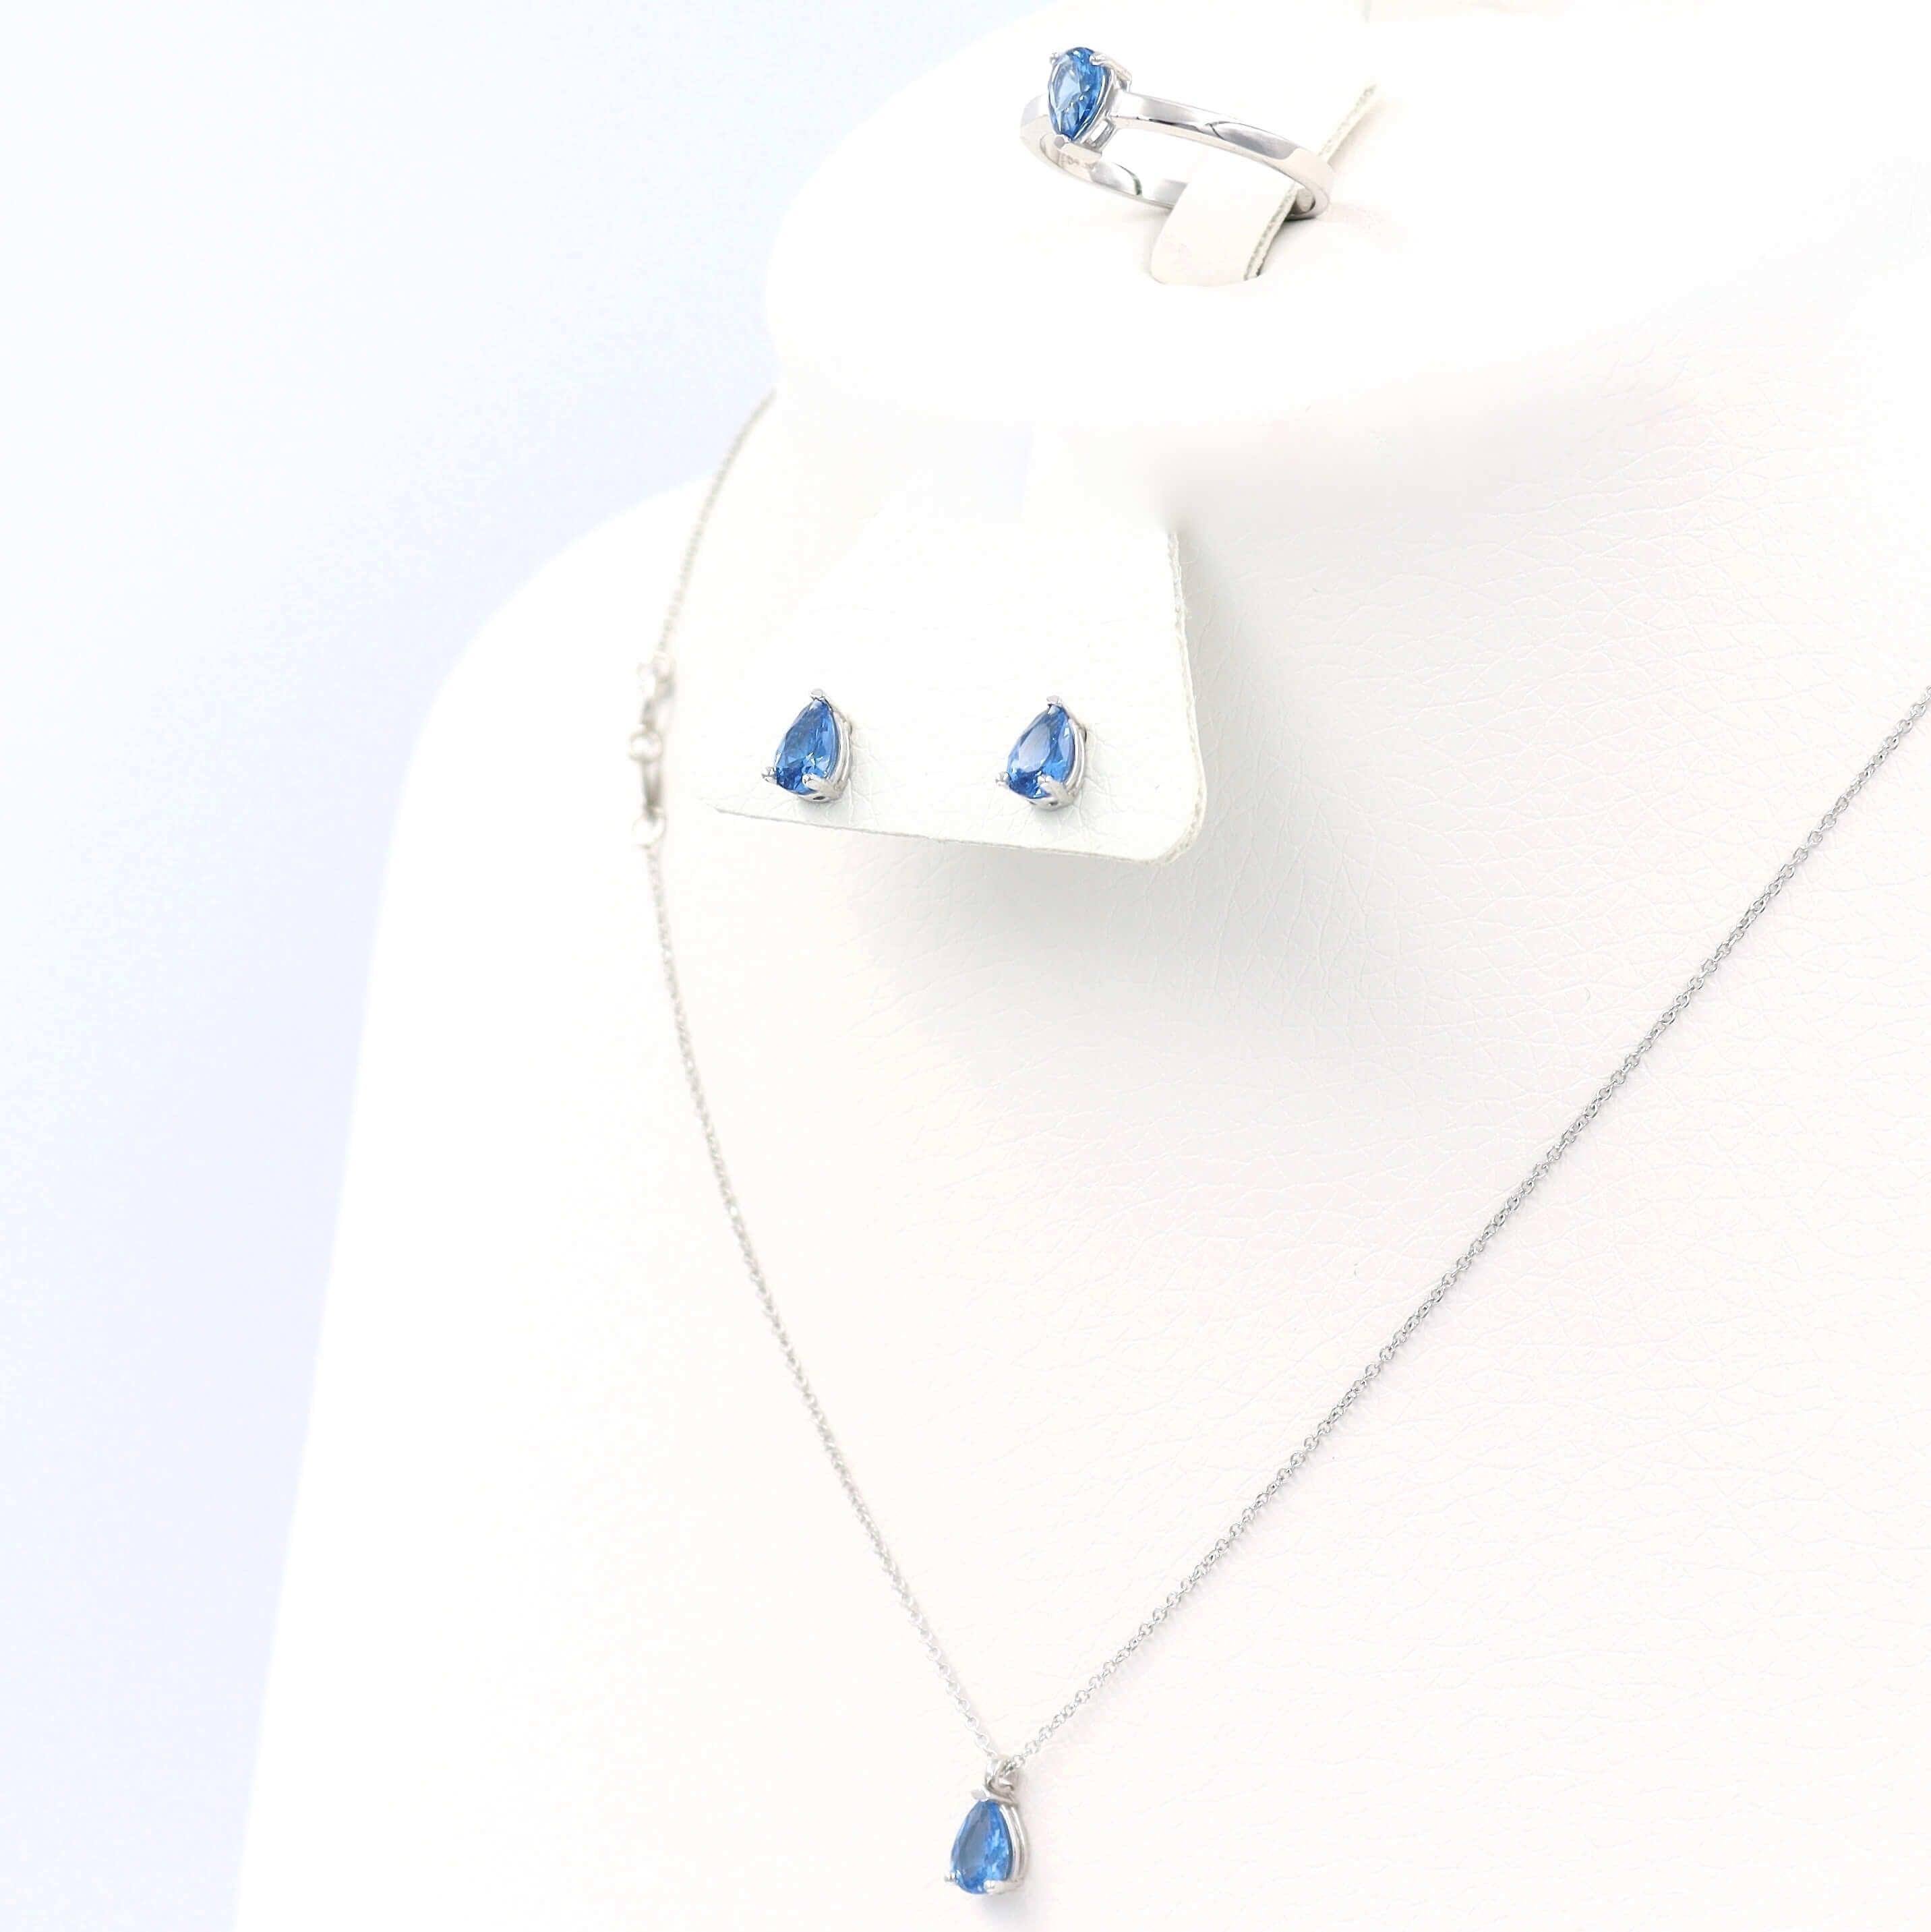 Λευκόχρυσο Σετ Γάμου με γαλάζιες πέτρες σε σχήμα σταγόνας